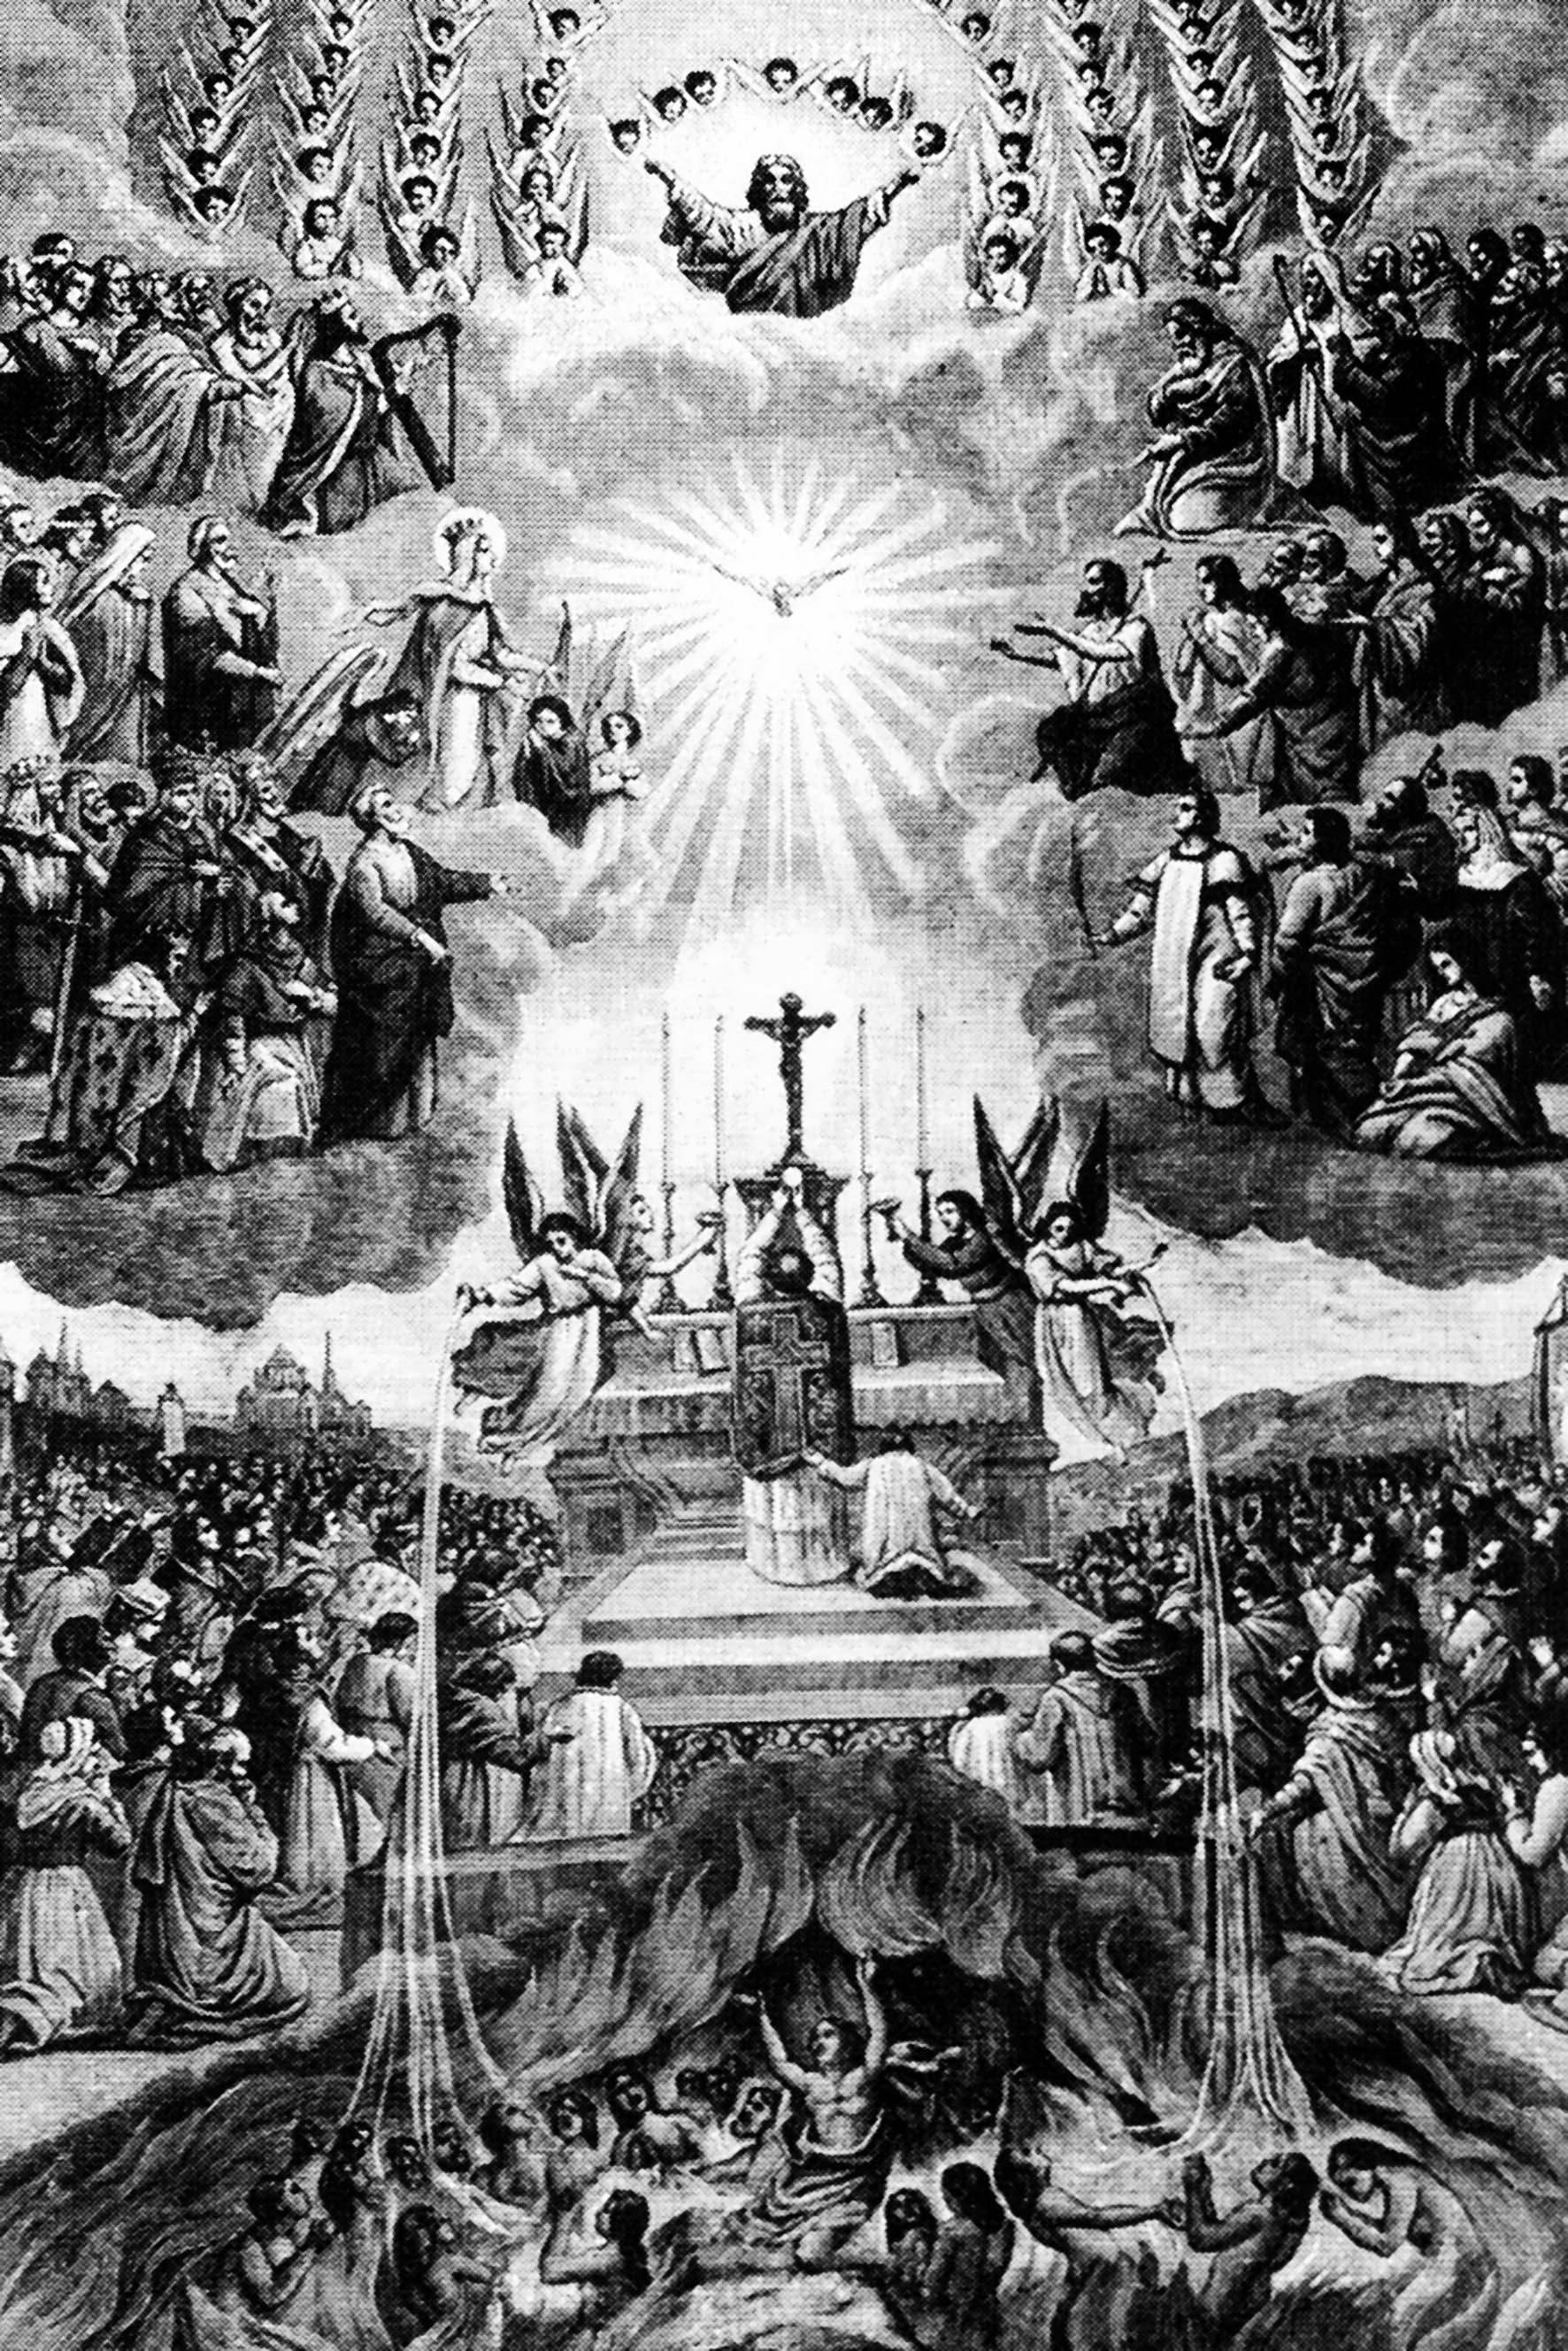 Symbolique de la Messe: renouvellement non sanglant du Sacrifice de Jésus Christ sur la Croix. Promenez vous sur l'image et contemplez...